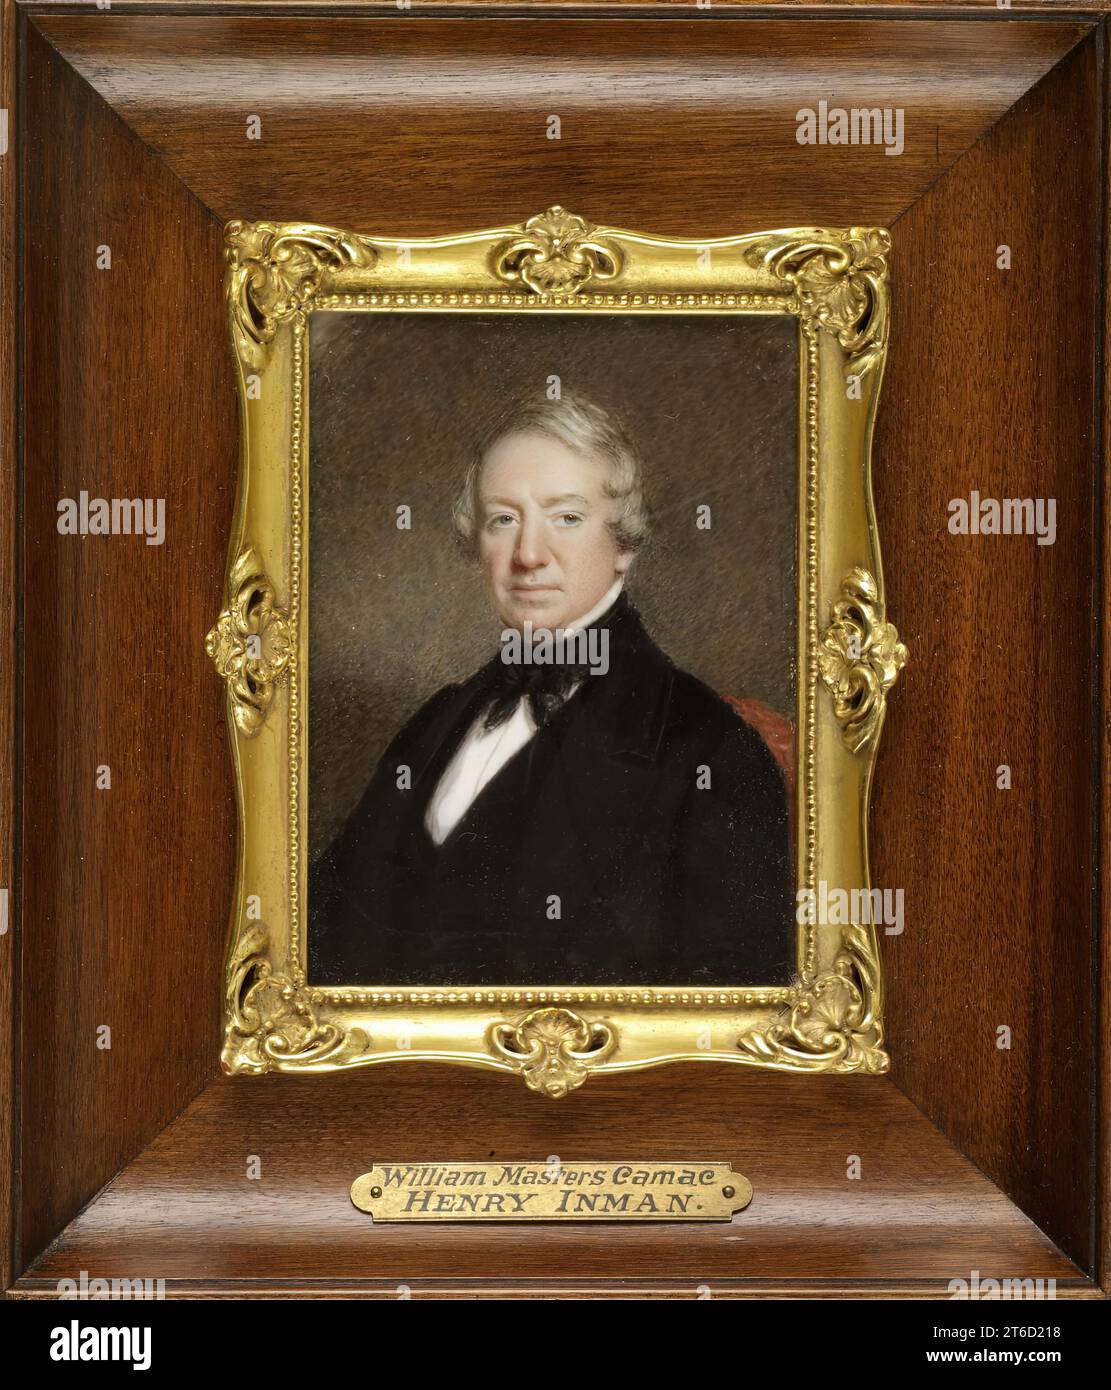 William Masters Camac, 1840. Inman wird mit großformatigen Porträts assoziiert, aber er produzierte auch Miniaturen. Er wurde in Utica geboren und absolvierte eine Lehre in New York City bei dem US-amerikanischen Künstler John Wesley Jarvis (1781–1840). Er half bei der Gründung der National Academy of Design und war deren erster Vizepräsident. Stockfoto